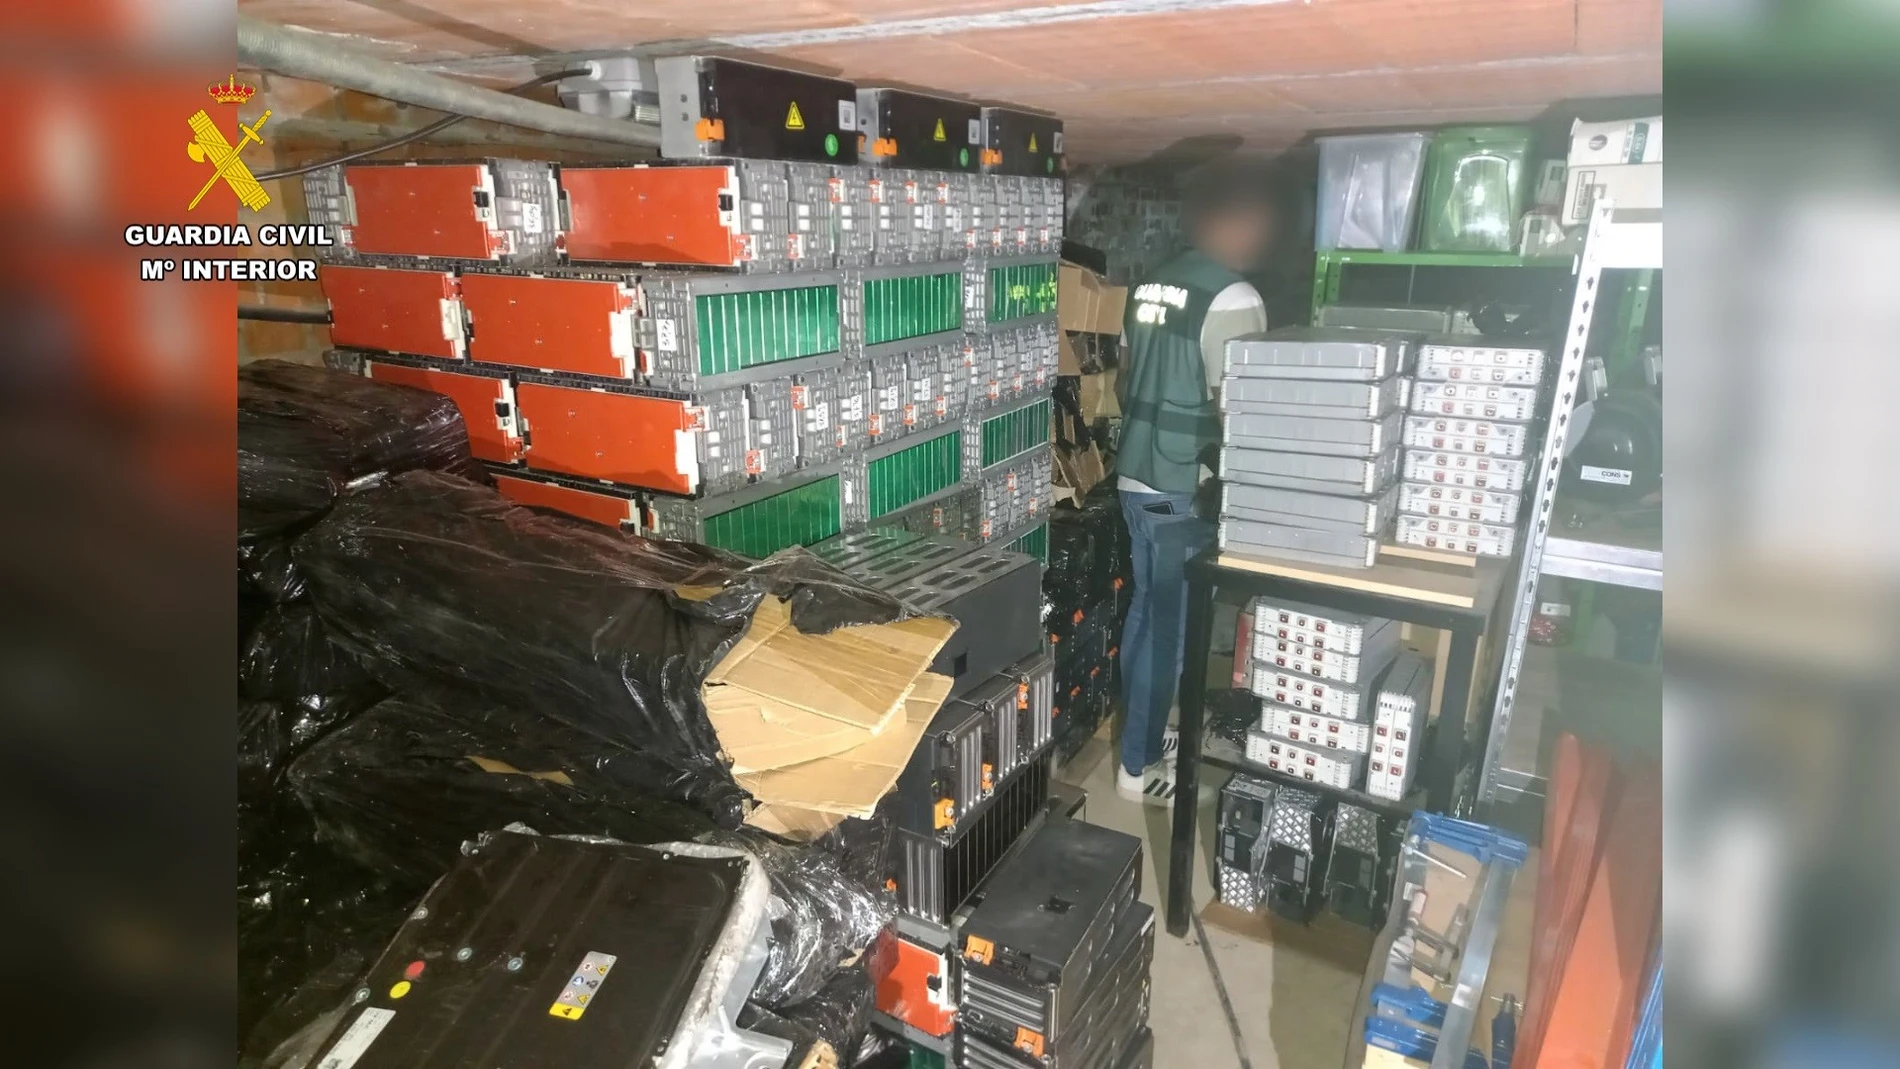 Baterias de litio almacenadas ilegalmente en una casa de Oteros (Segovia). GUARDIA CIVIL 07/08/2023